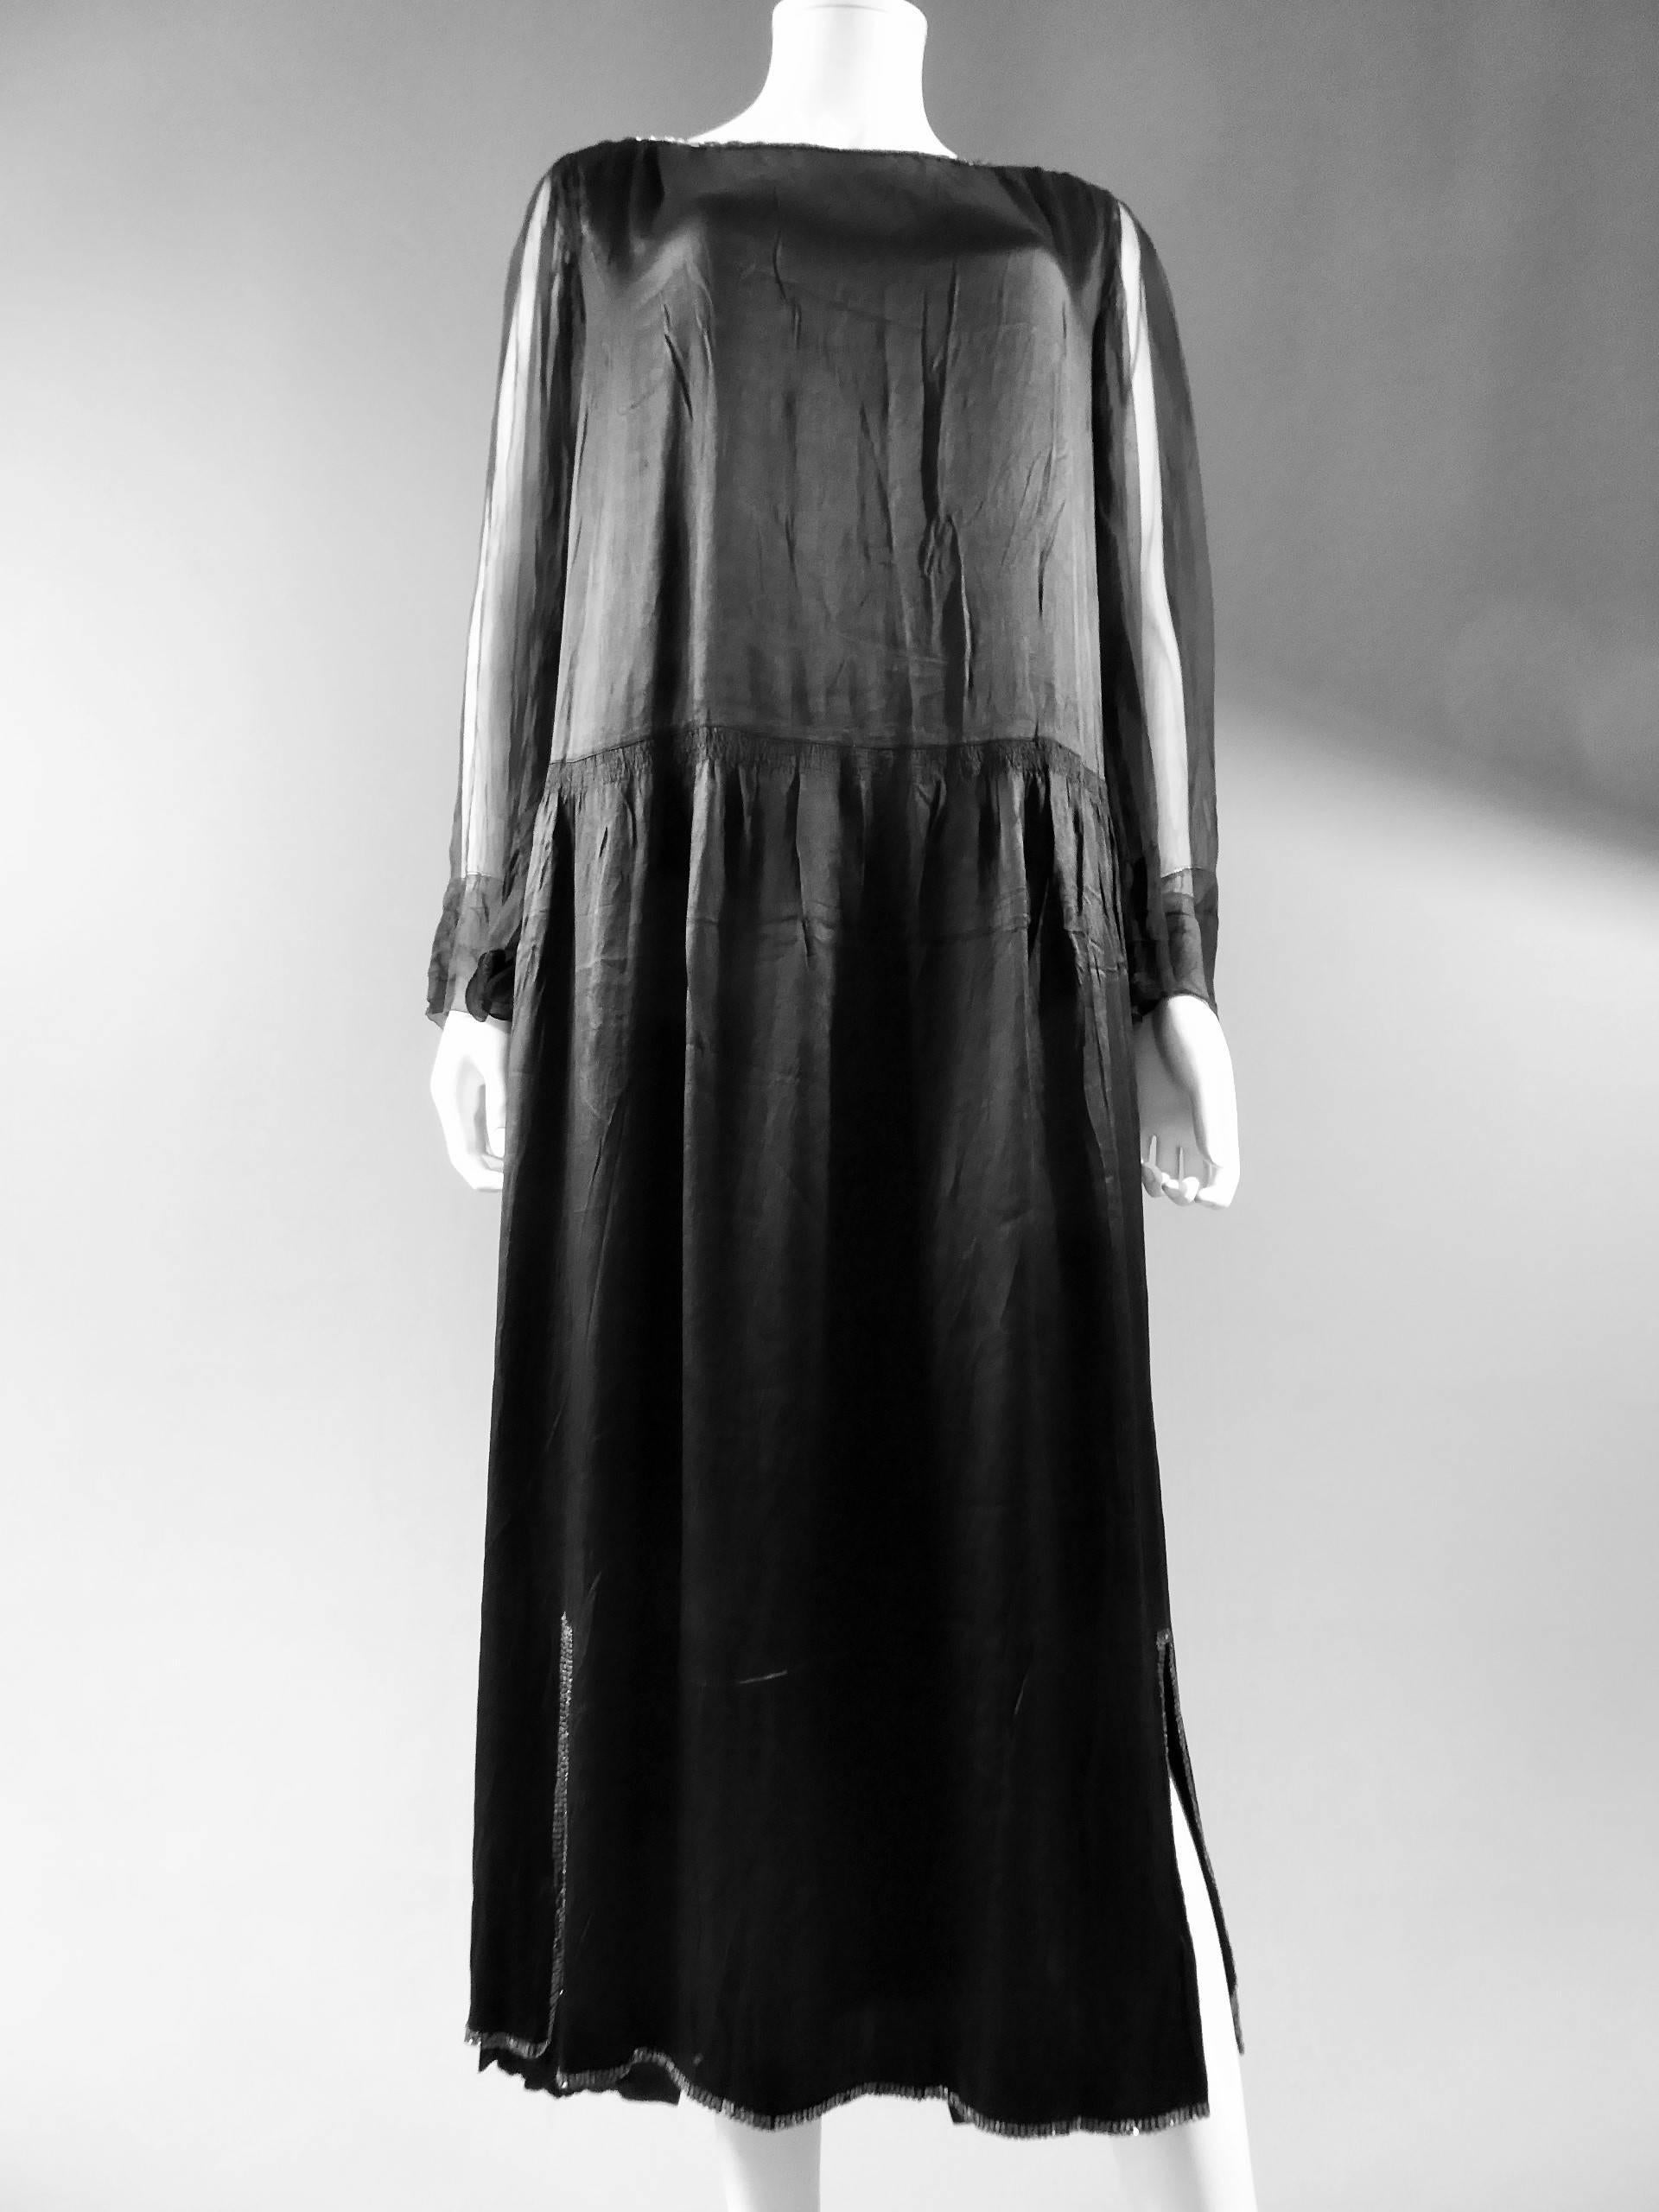 Circa 1920.

France.

Robe longue en crêpe de soie noir de Jeanne Lanvin Haute Couture. Forme large avec le dos de la robe plus long que le devant. Ajustement de la jupe, fendue sur les côtés en bas, avec 7 rangées de fronces montées à la pointe